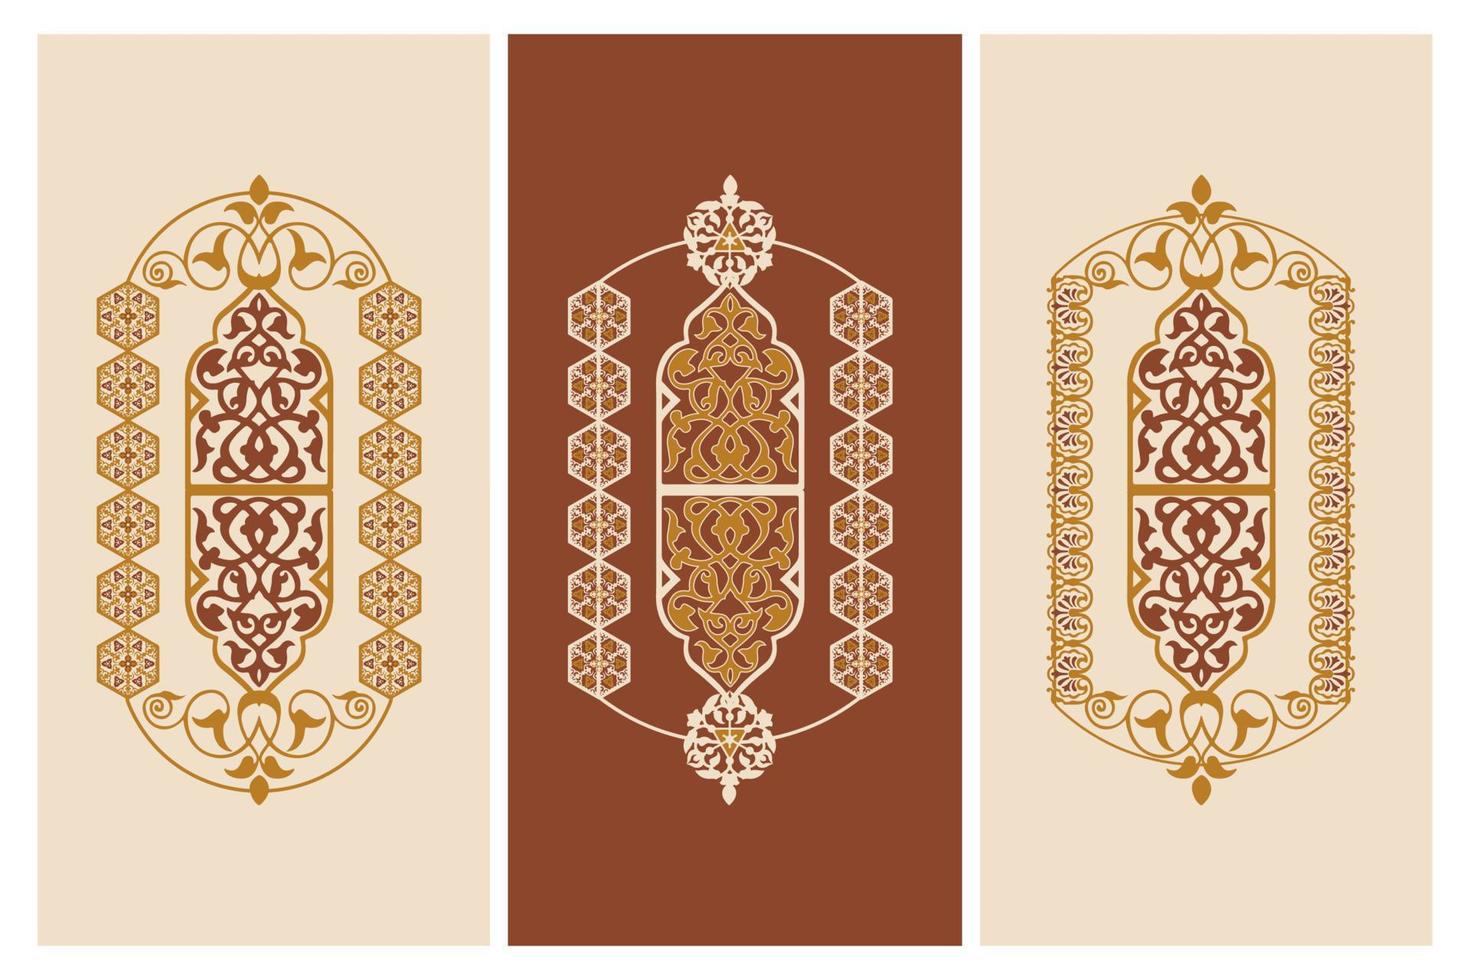 marco floral con estilo árabe islámico y arabesco geométrico con borde sin costuras. Fondo de vector elegante para invitaciones y tarjetas de felicitación...